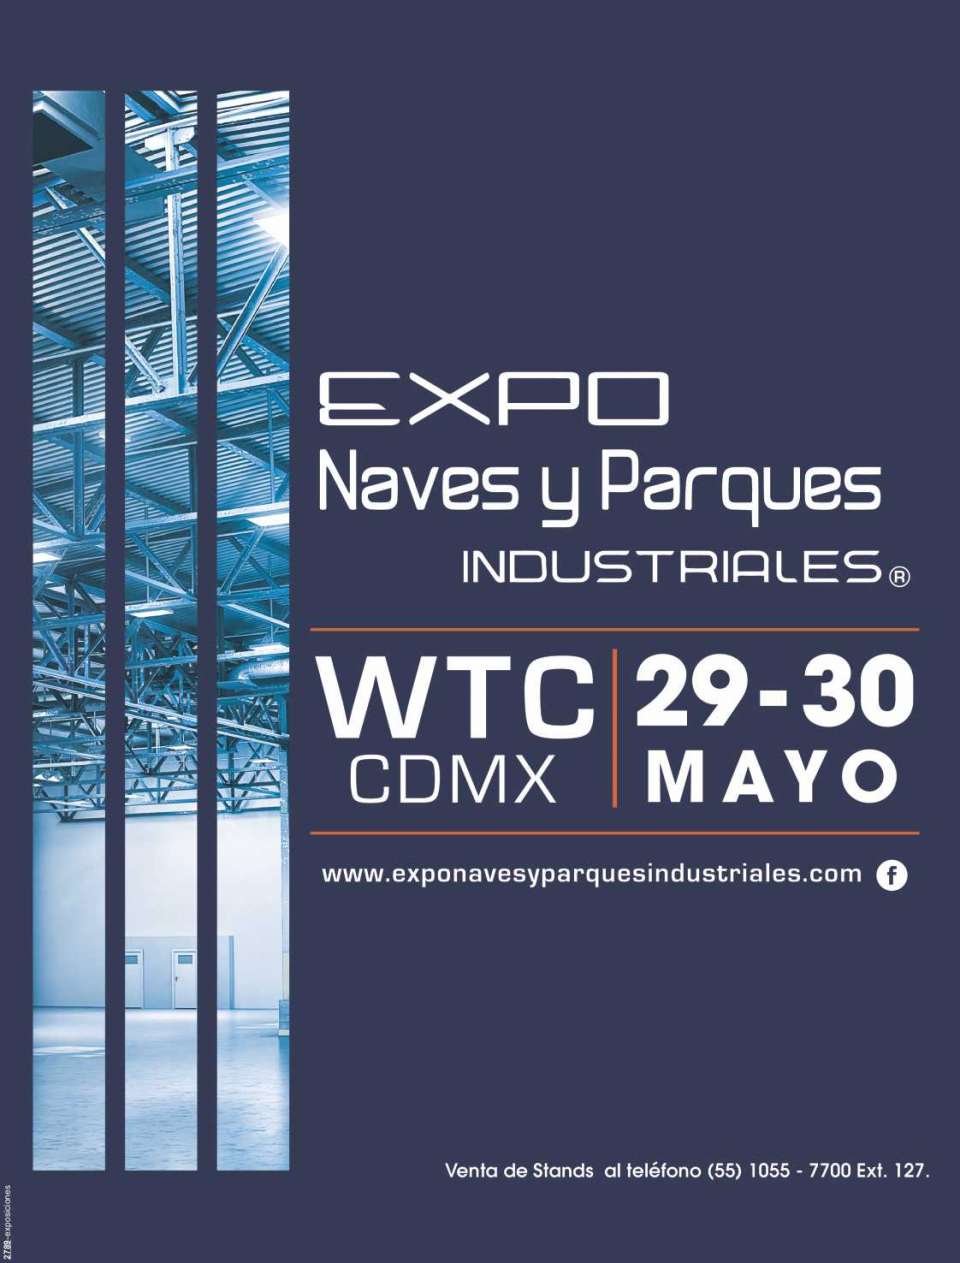 Expo Naves y Parques Industriales, del 9 al 30 de Mayo 2019 en W.T.C. Ciudad de Mexico.